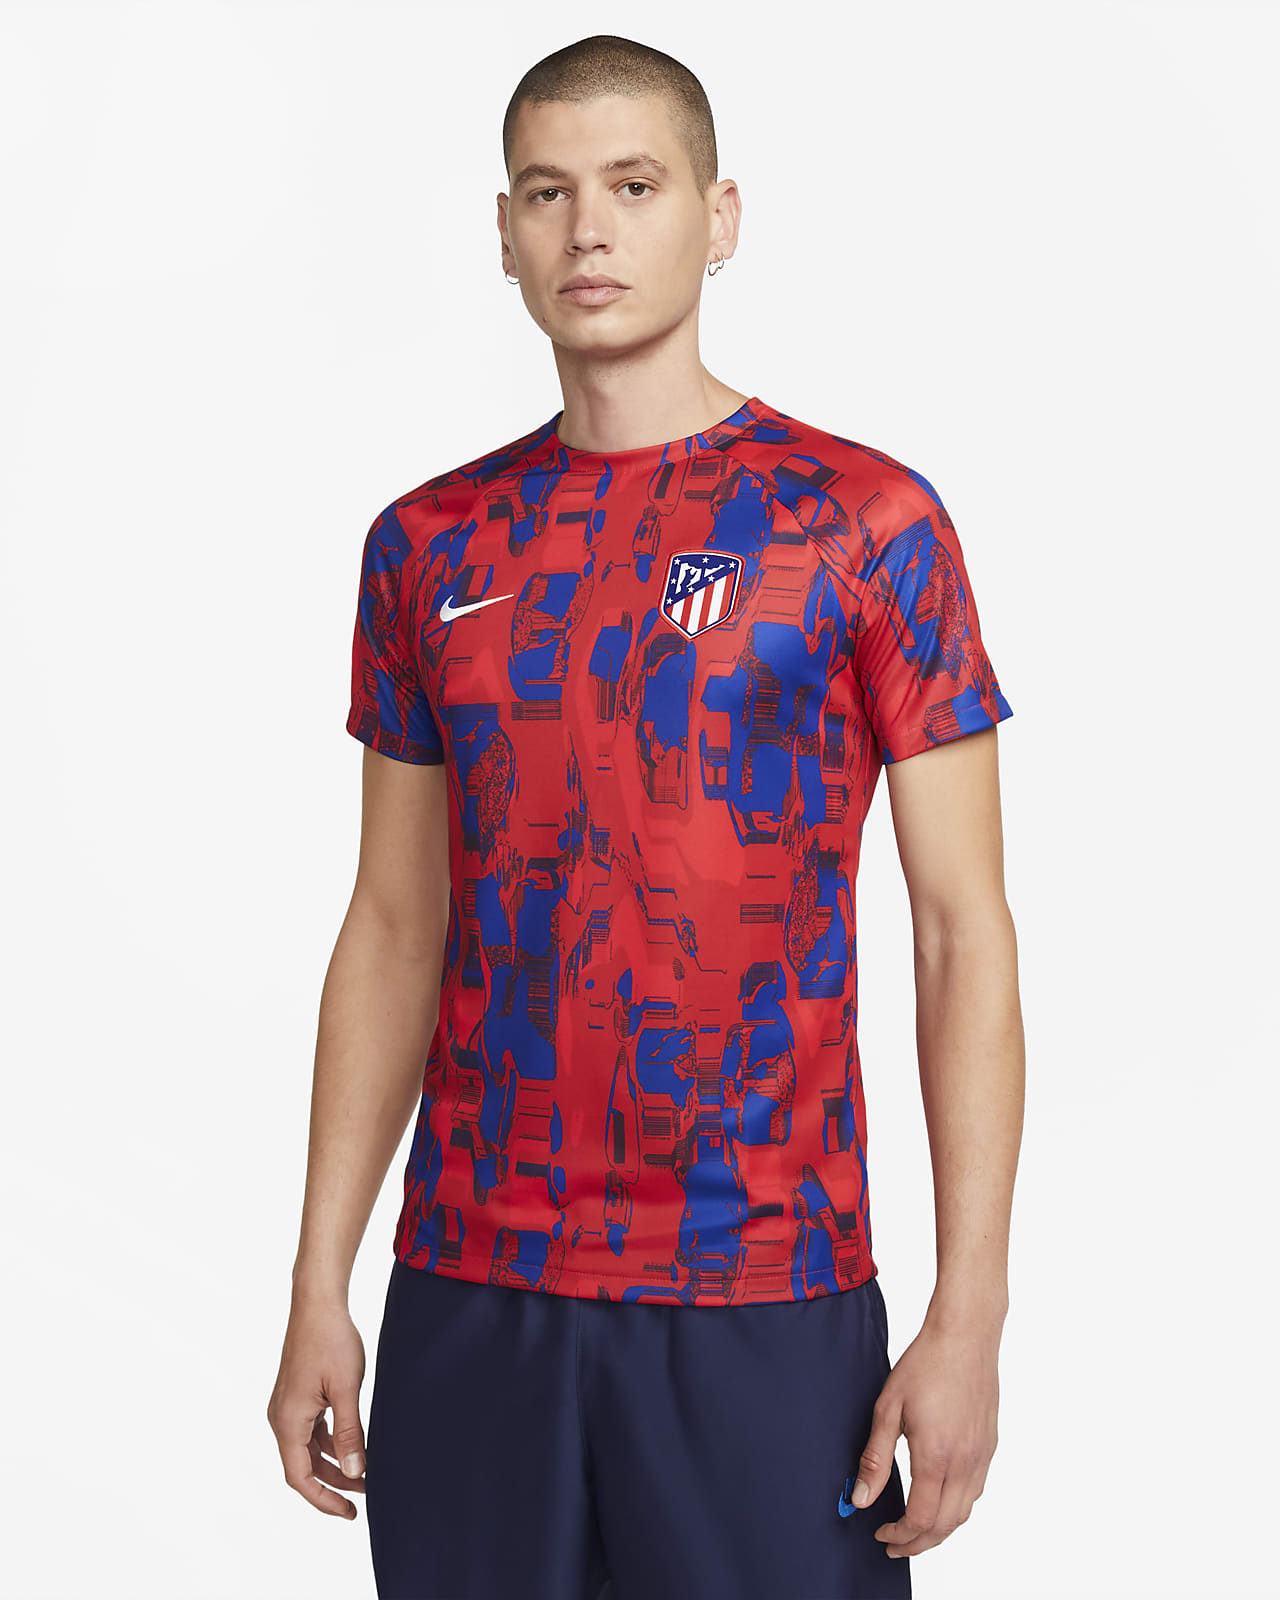 Ανδρική ποδοσφαιρική μπλούζα προθέρμανσης Nike Dri-FIT Ατλέτικο Μαδρίτης Academy Pro